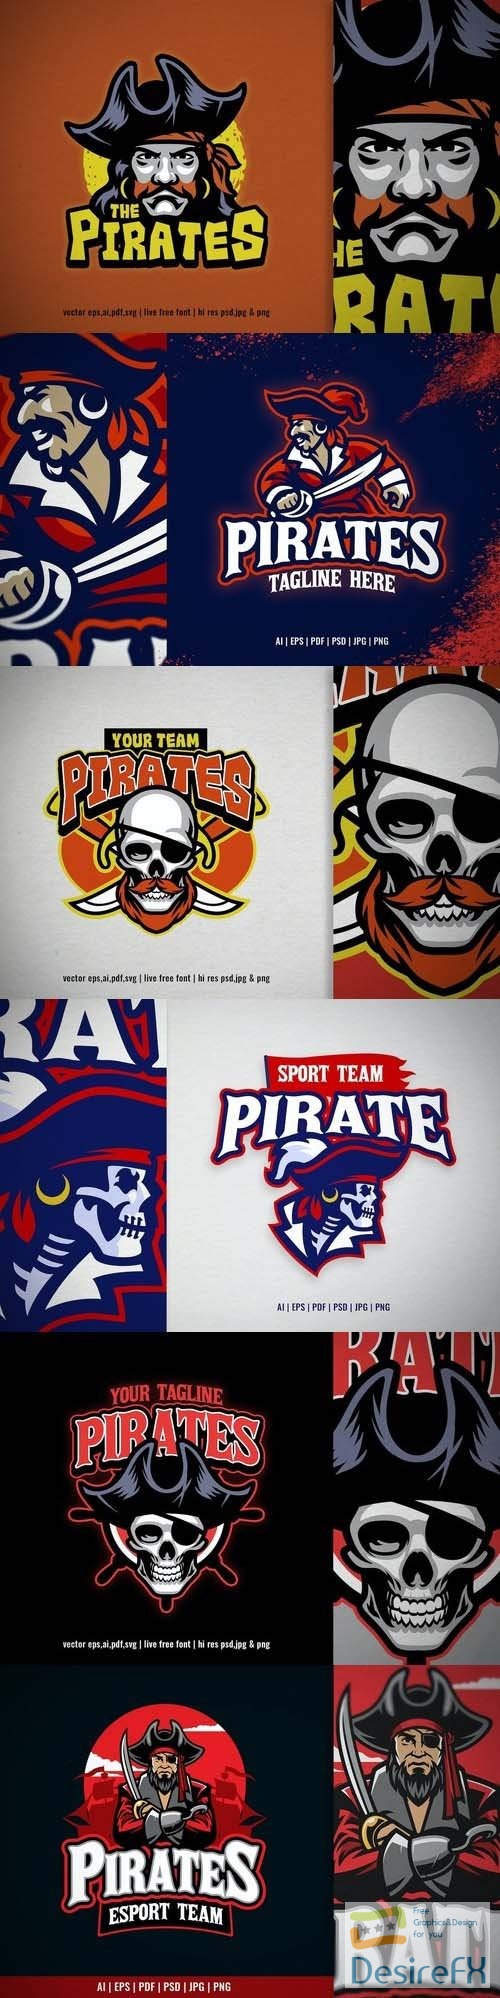 Pirate Captain for Sport and Esport Team Logo